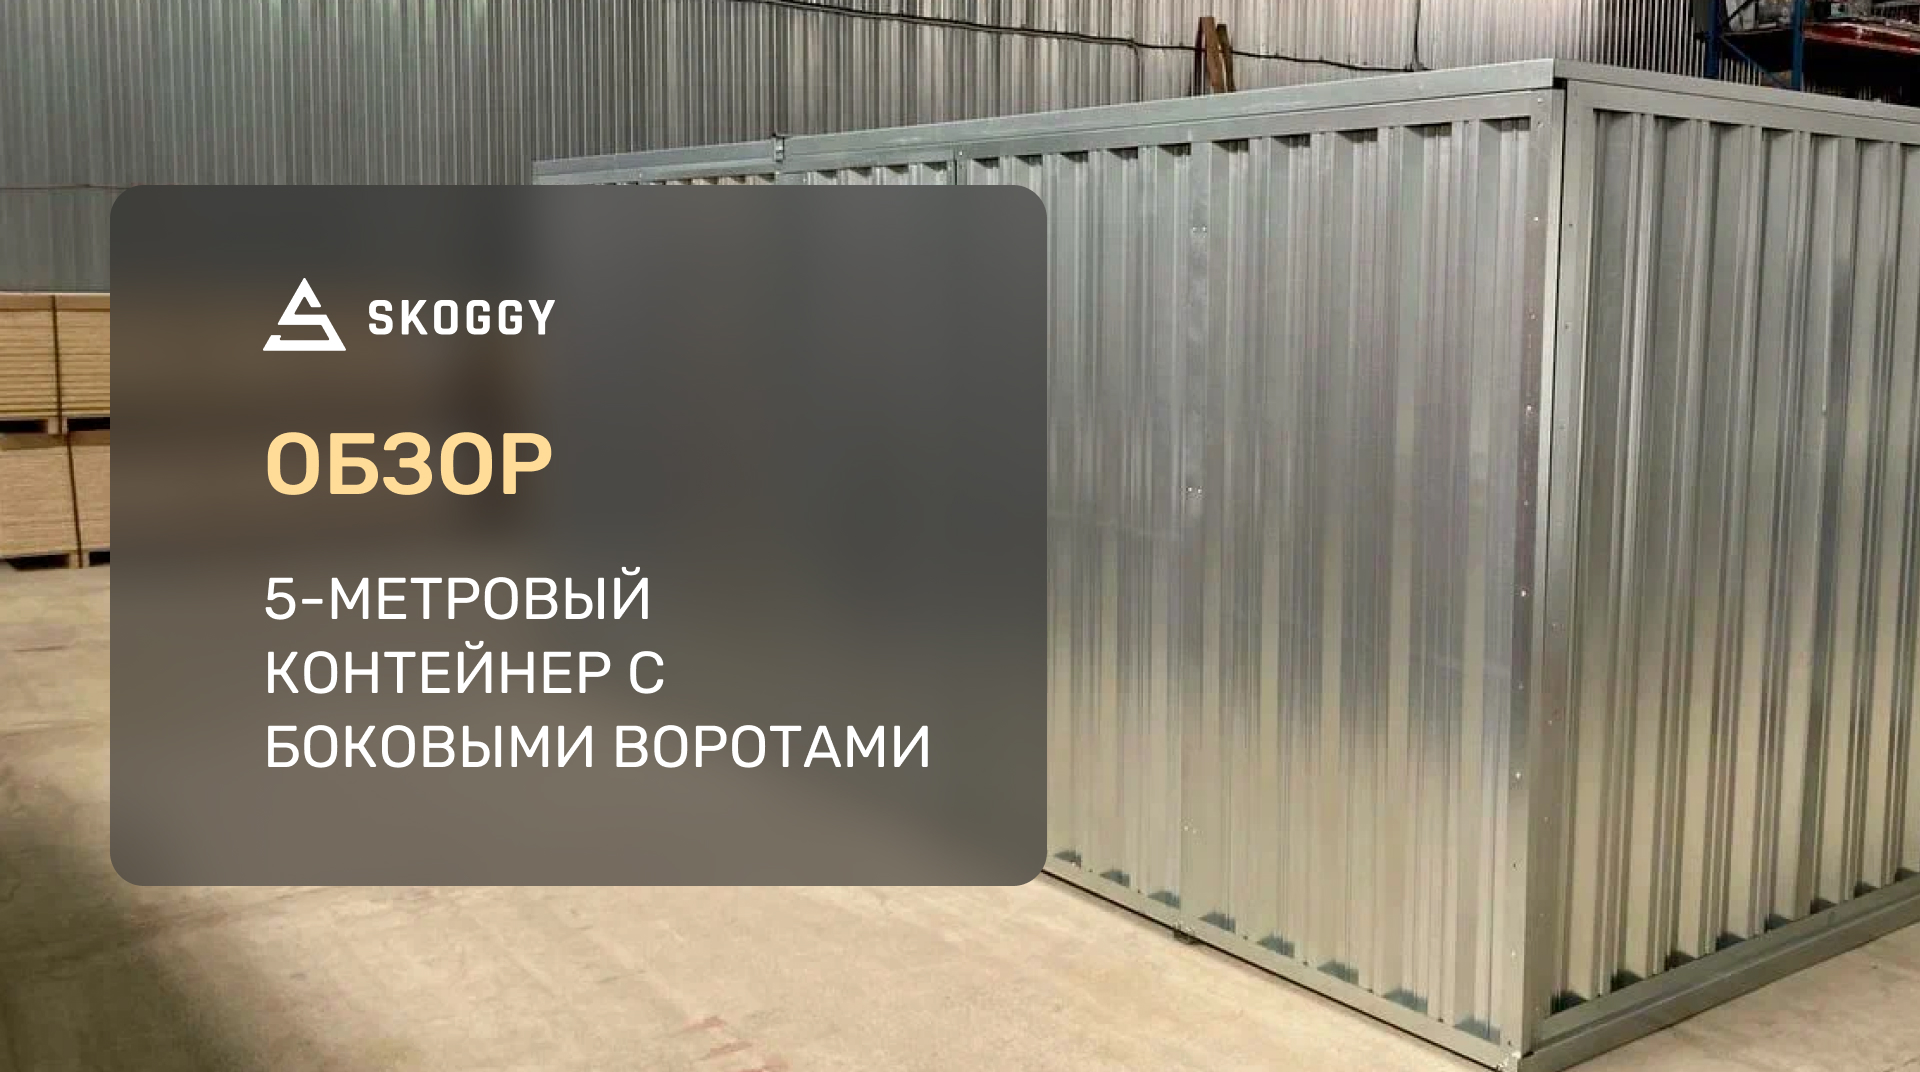 ...https://skoggy.ru/projects/blok-konteyner-sklad-s-bokovoy-dveryu-v-odinc...